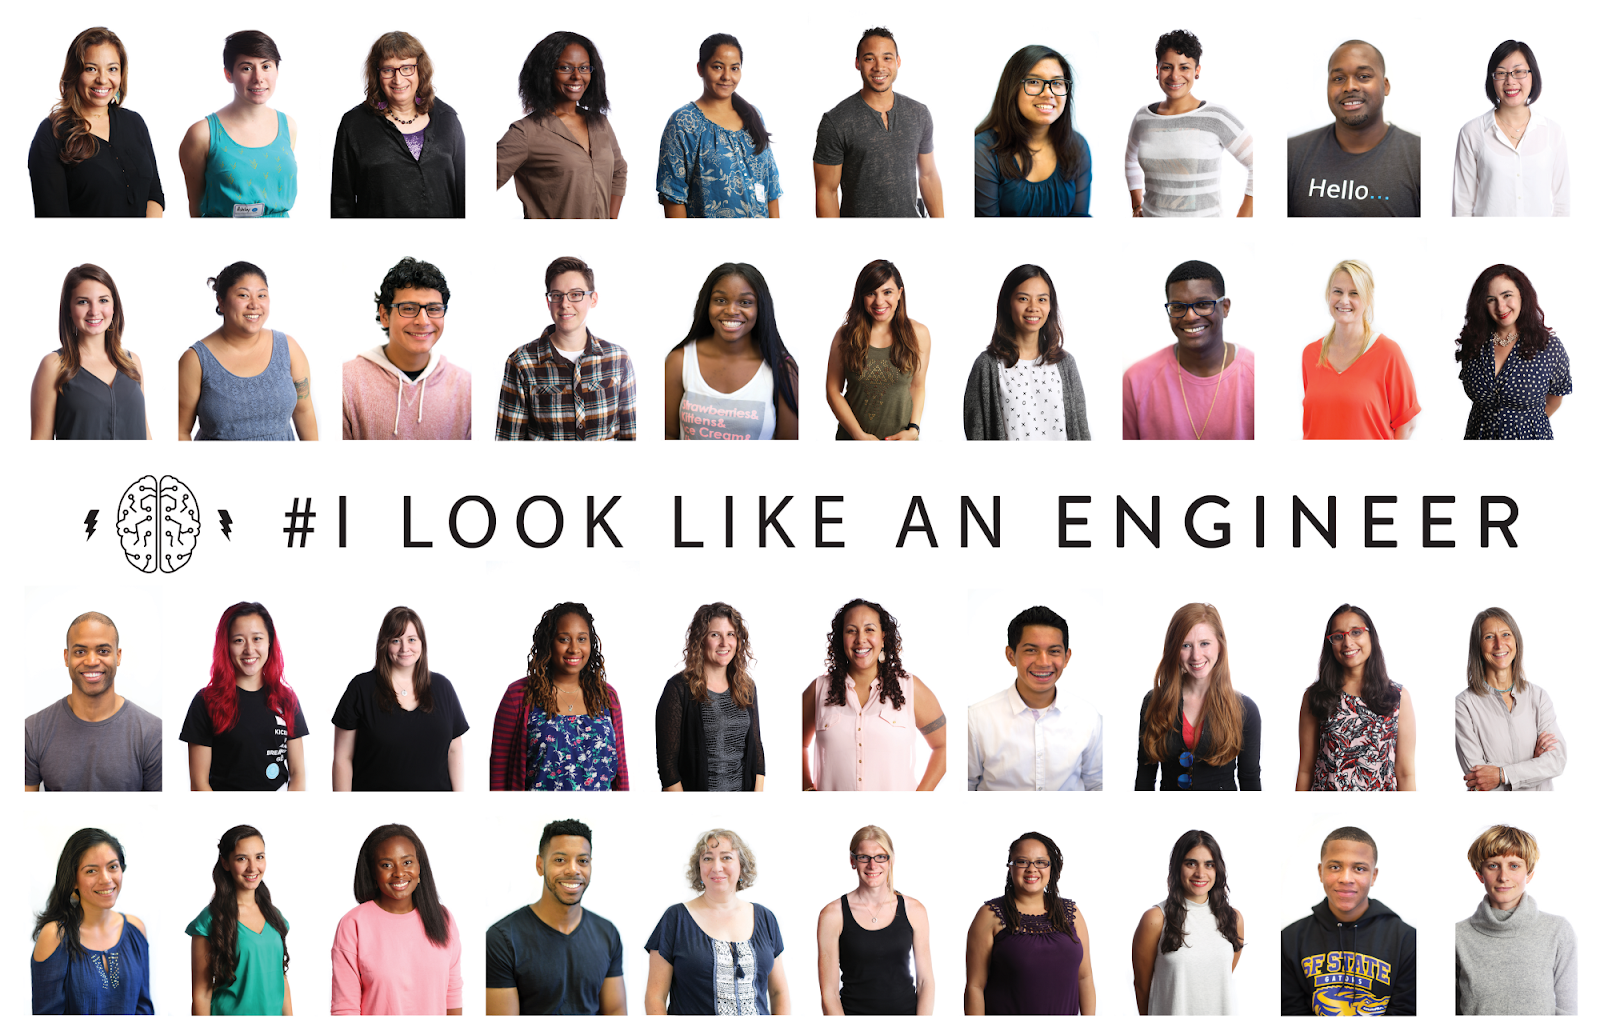 #ILookLikeAnEngineer poster showing underrepresented engineers